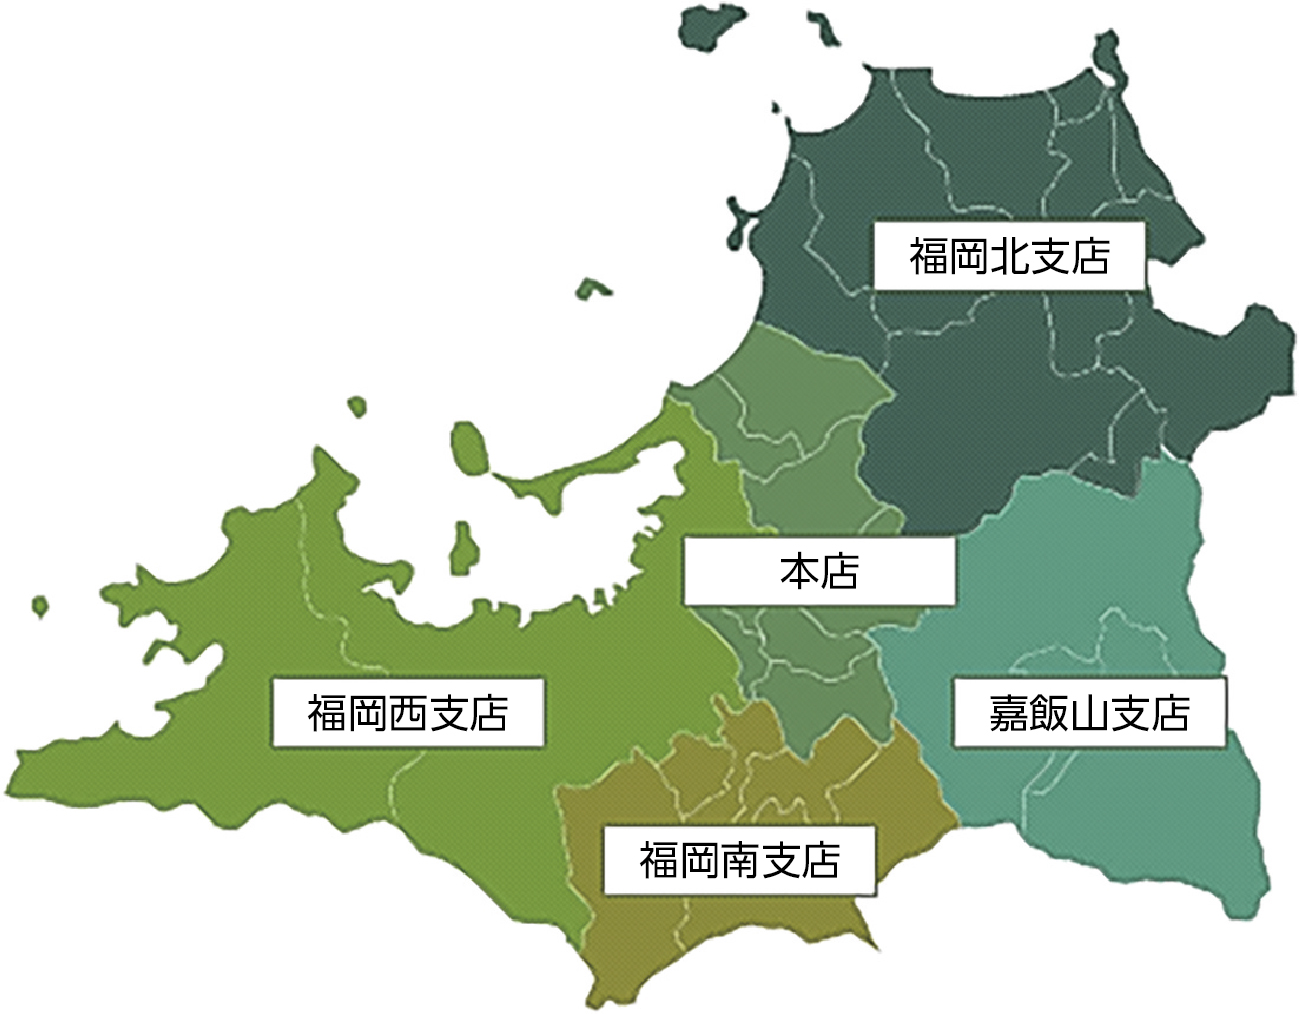 福岡県広域森林組合の管轄地域